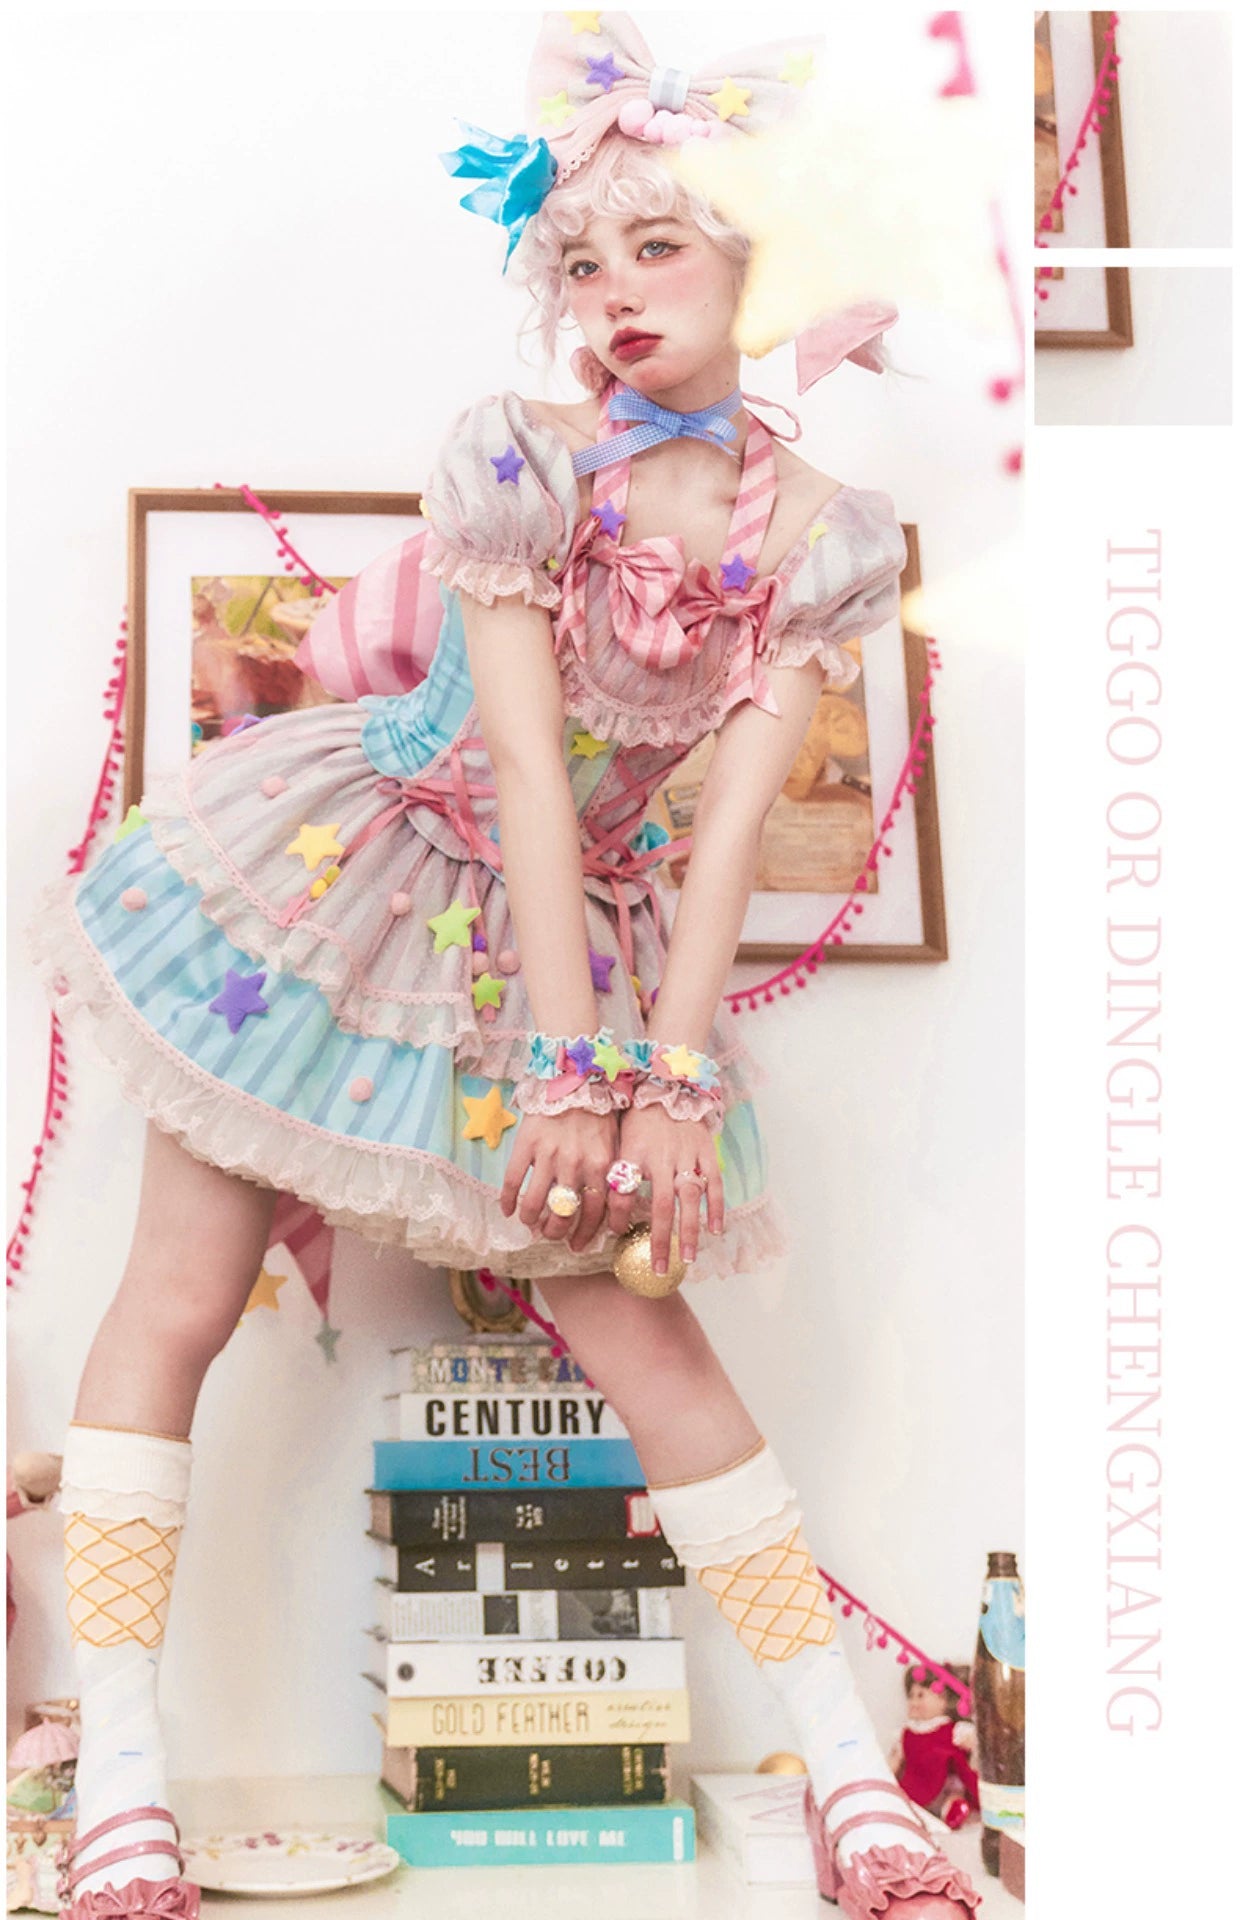 Sakurahime~Kawaii Lolita Pink Blue Daily Princess Dress   